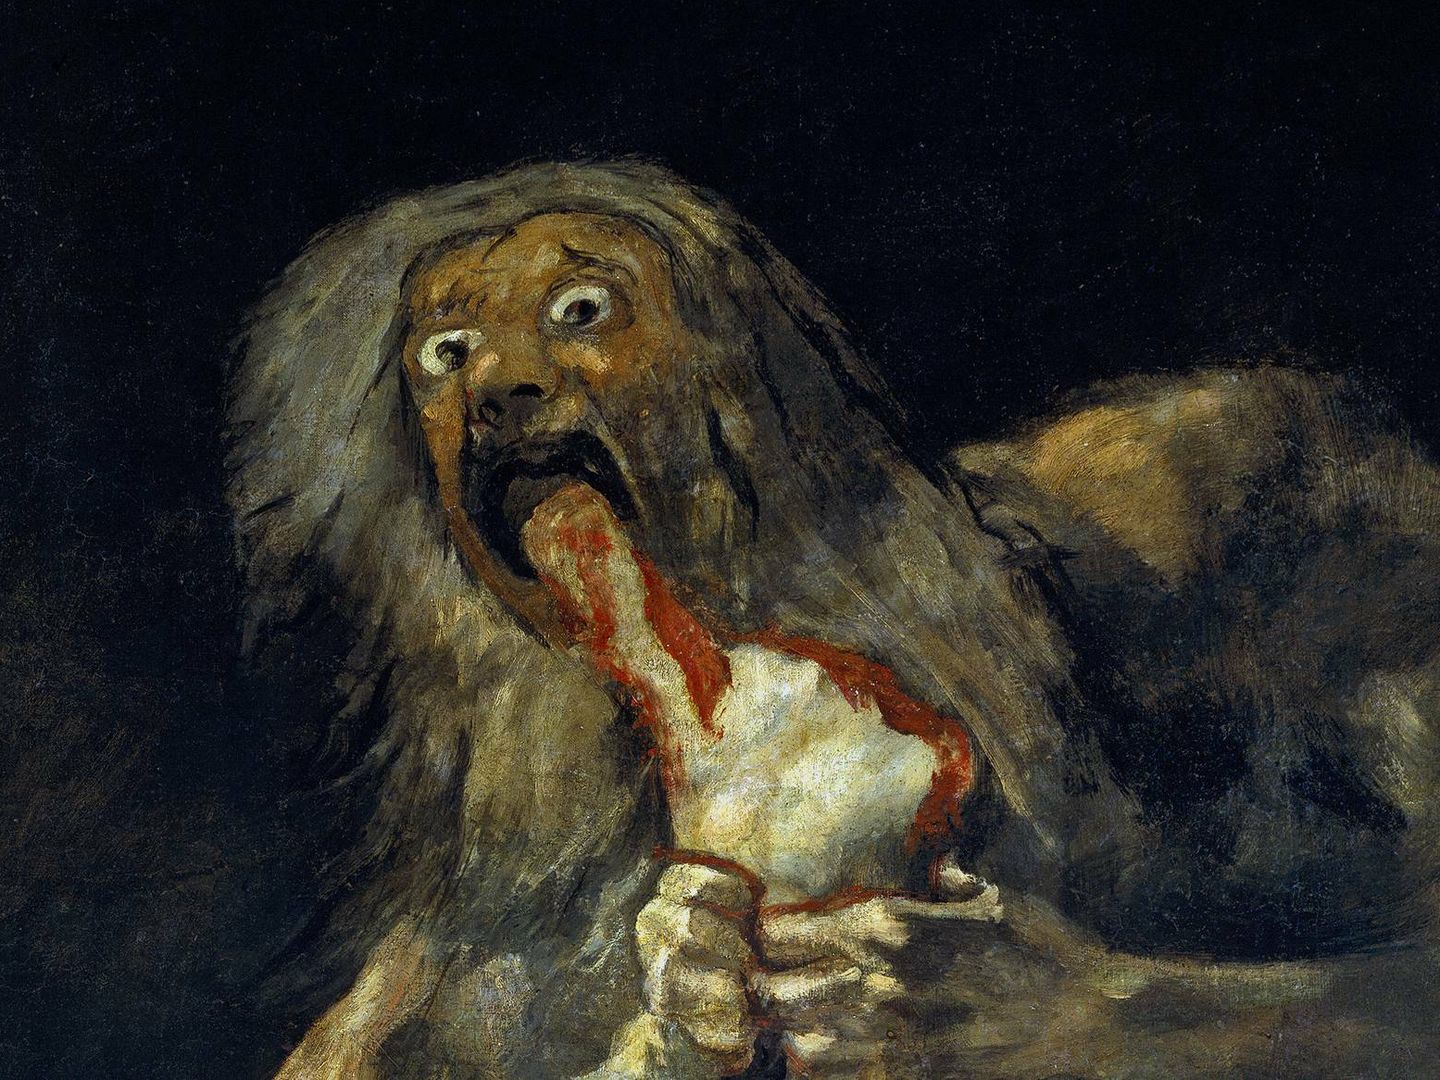 'Saturno devorando a su hijo', de Francisco de Goya. (Wikipedia)